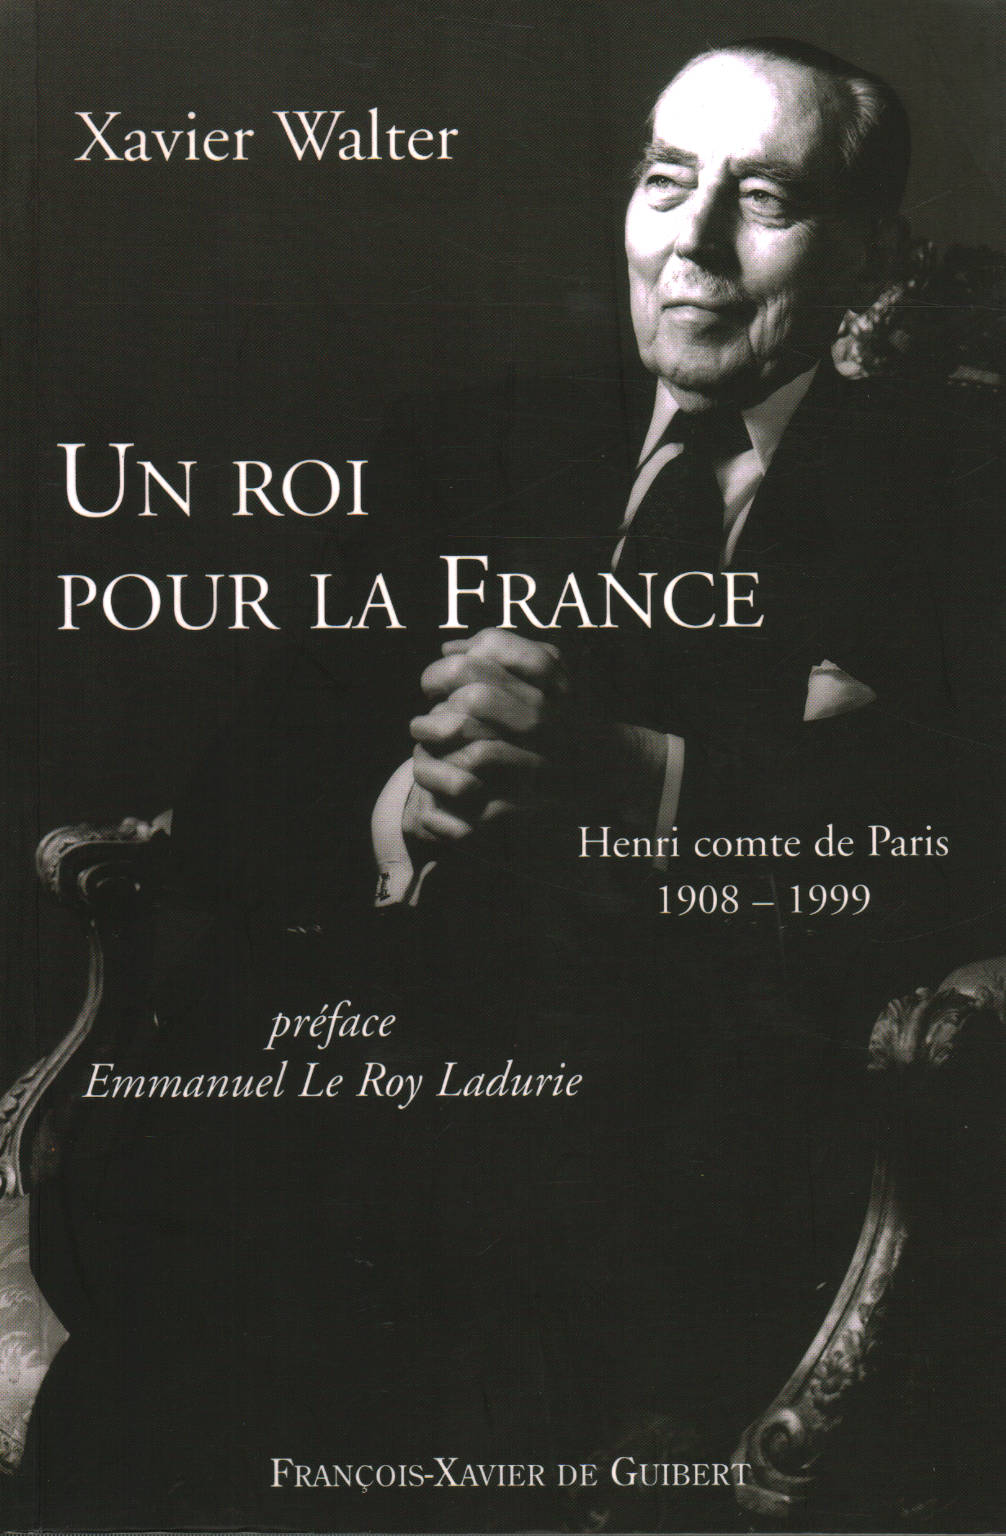 Un Roi pour la France: Henri comte de Paris 1908-1, Xavier Walter